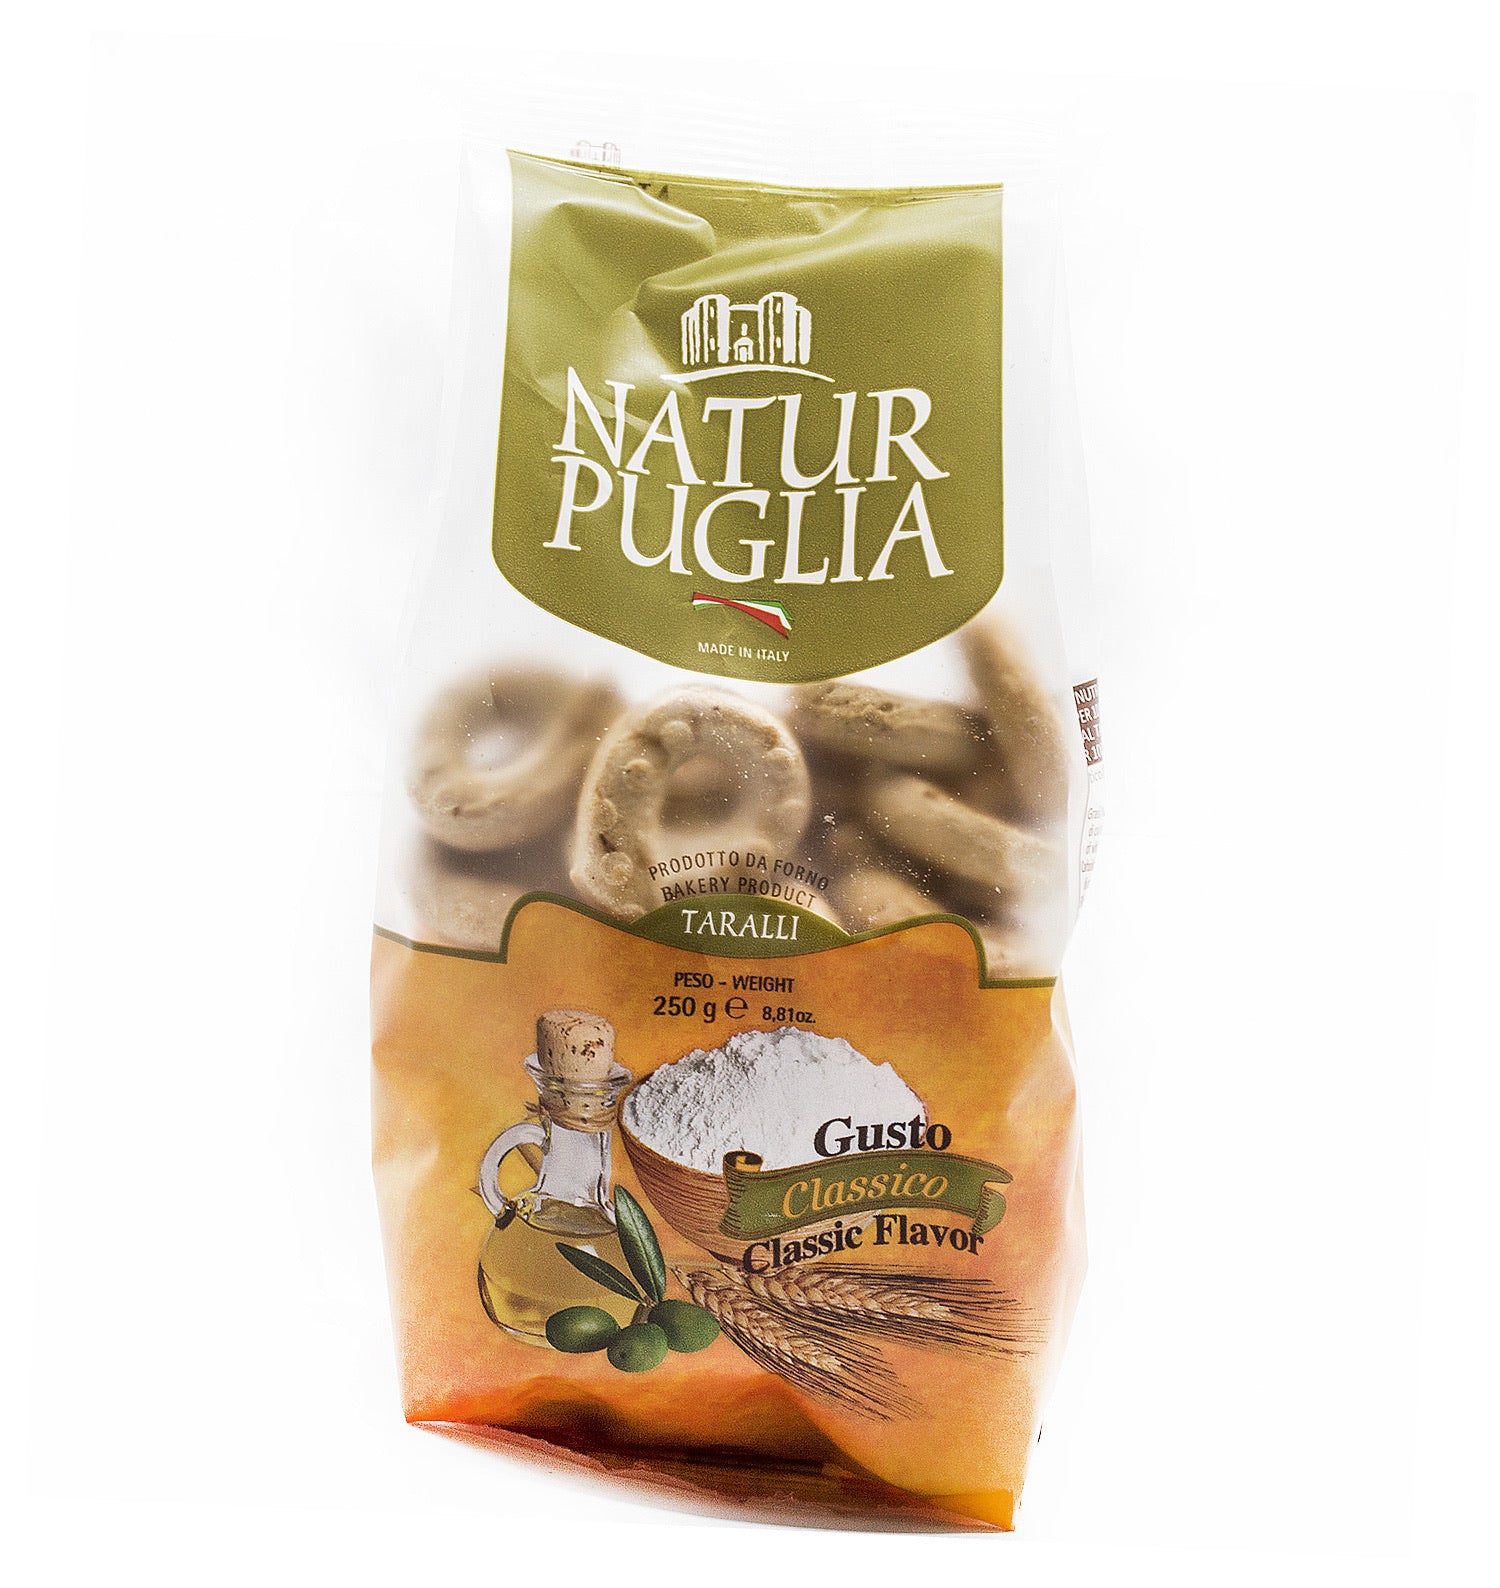 Natur Puglia Taralli classic flavor 250g